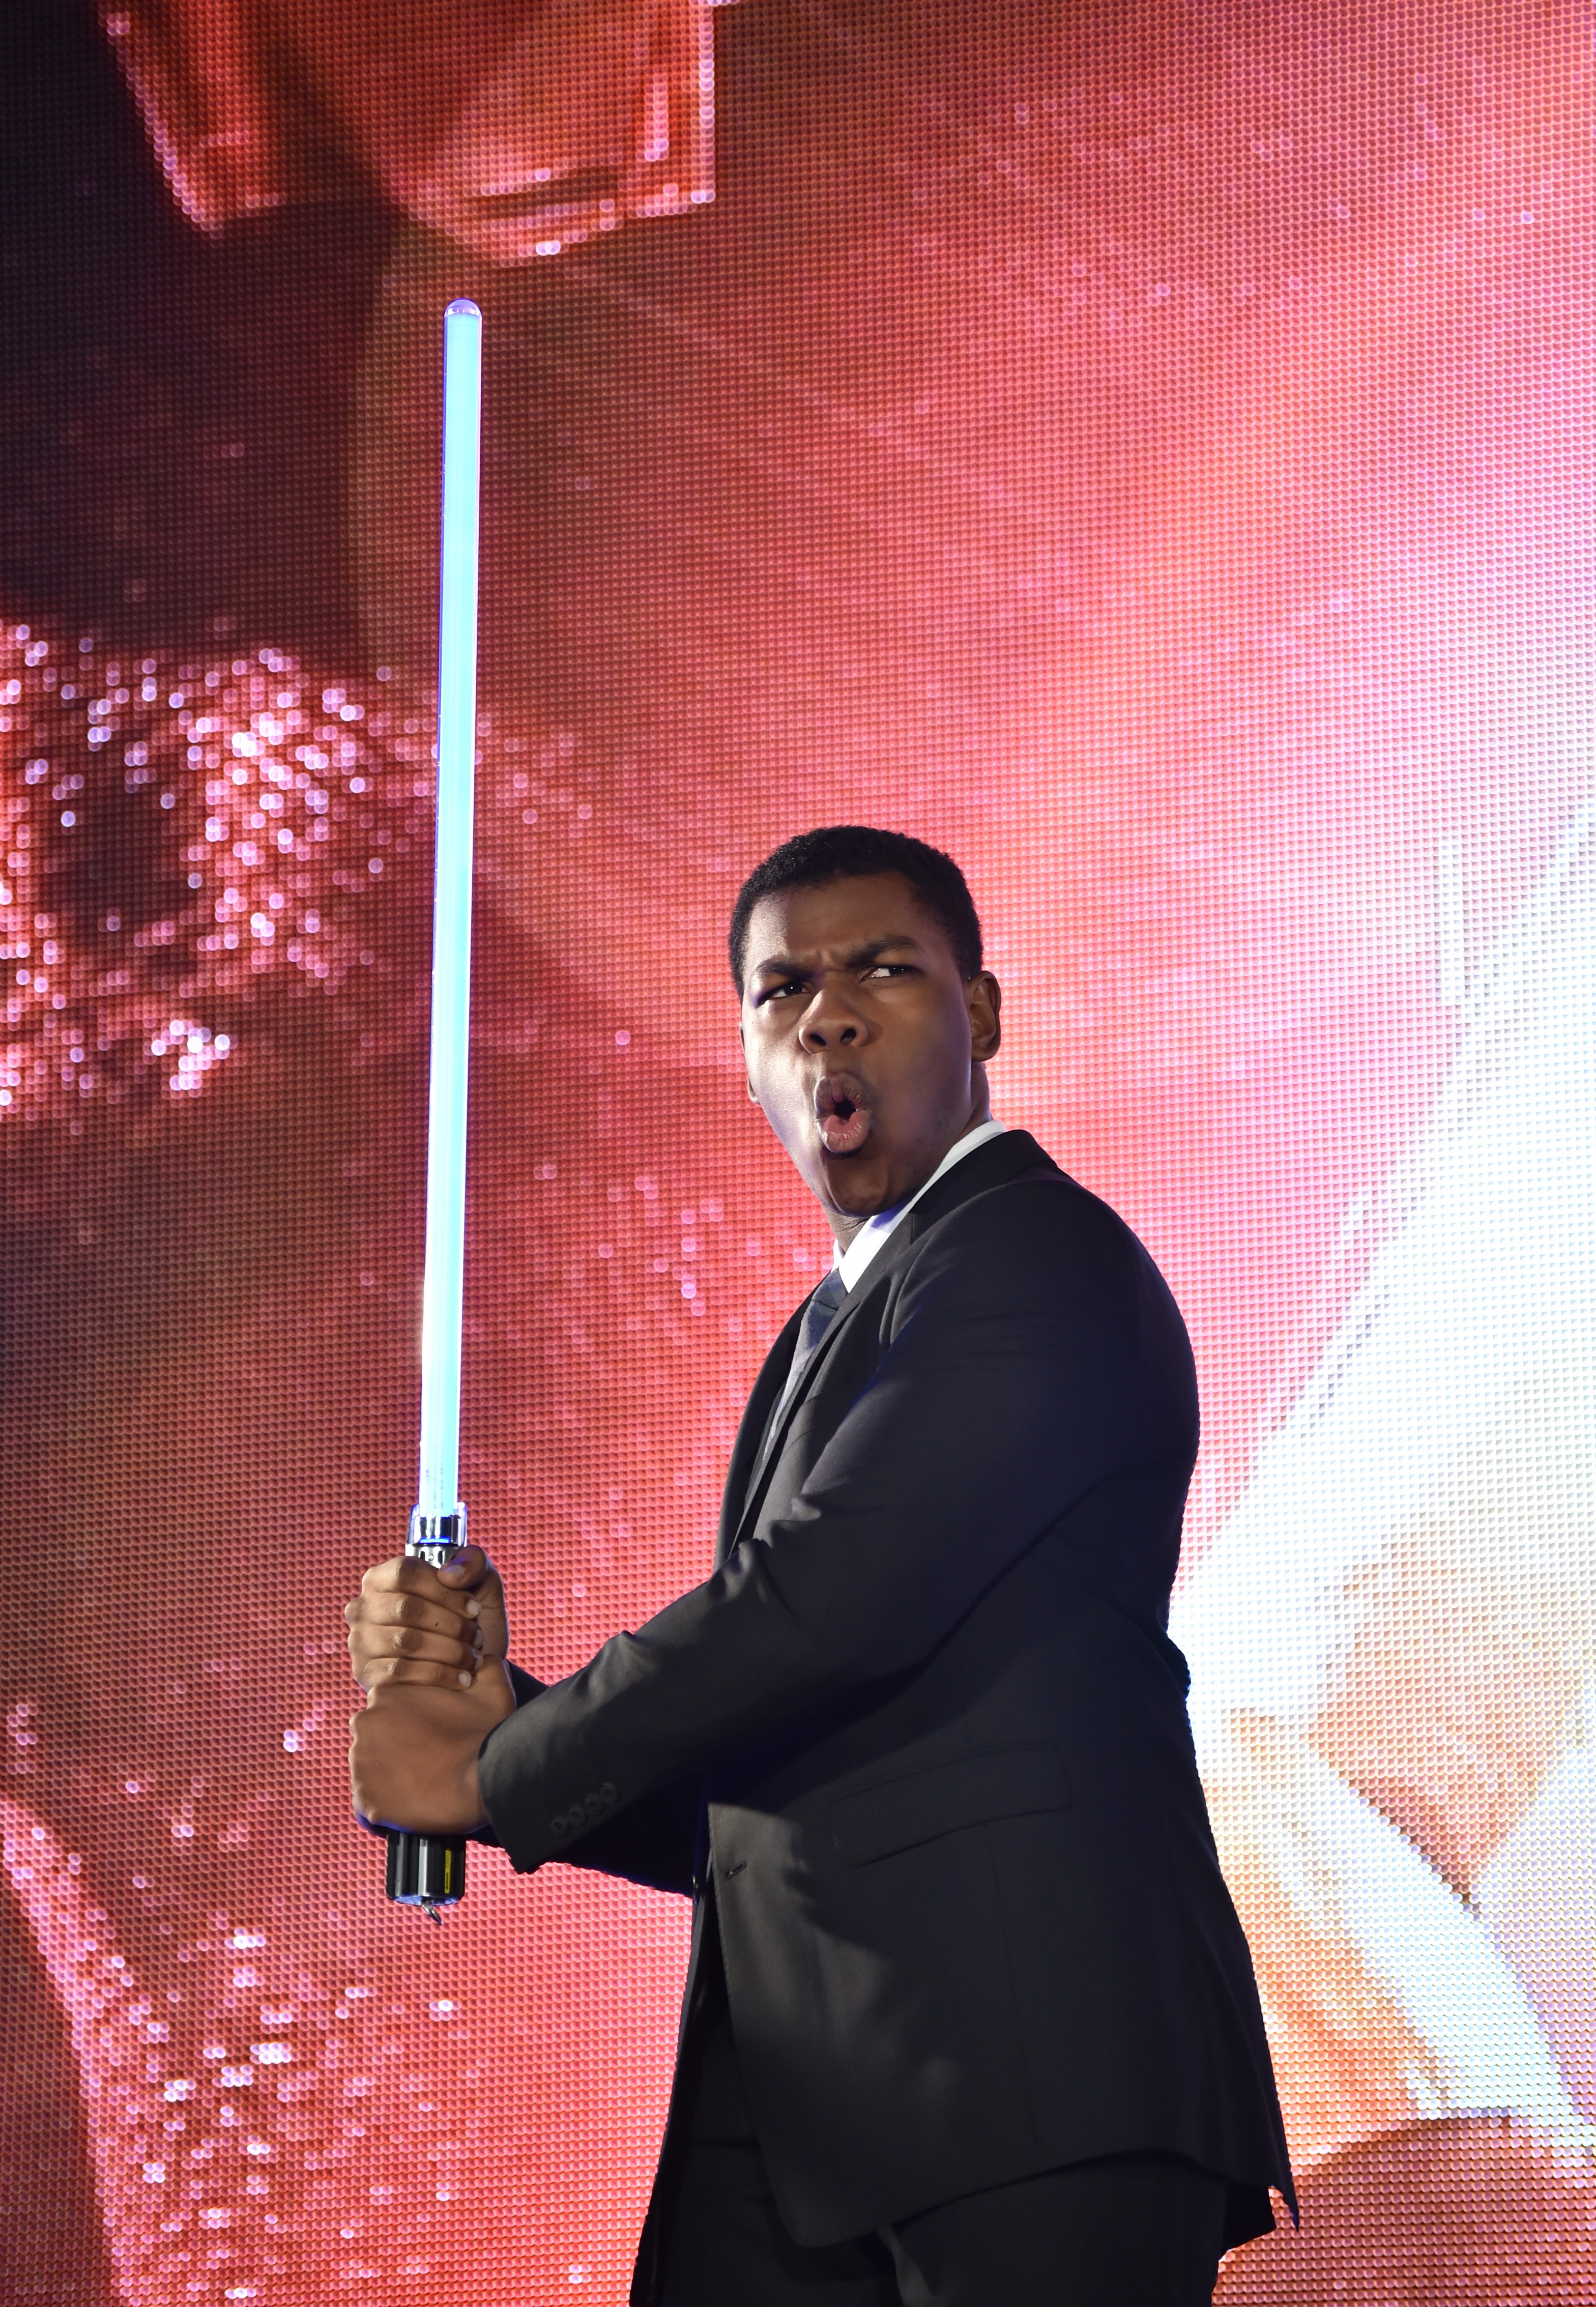 John Boyega ist vor allem für seine Rolle als Finn in der Blockbuster-Star-Wars-Reihe von 2015 bis 2019 bekannt